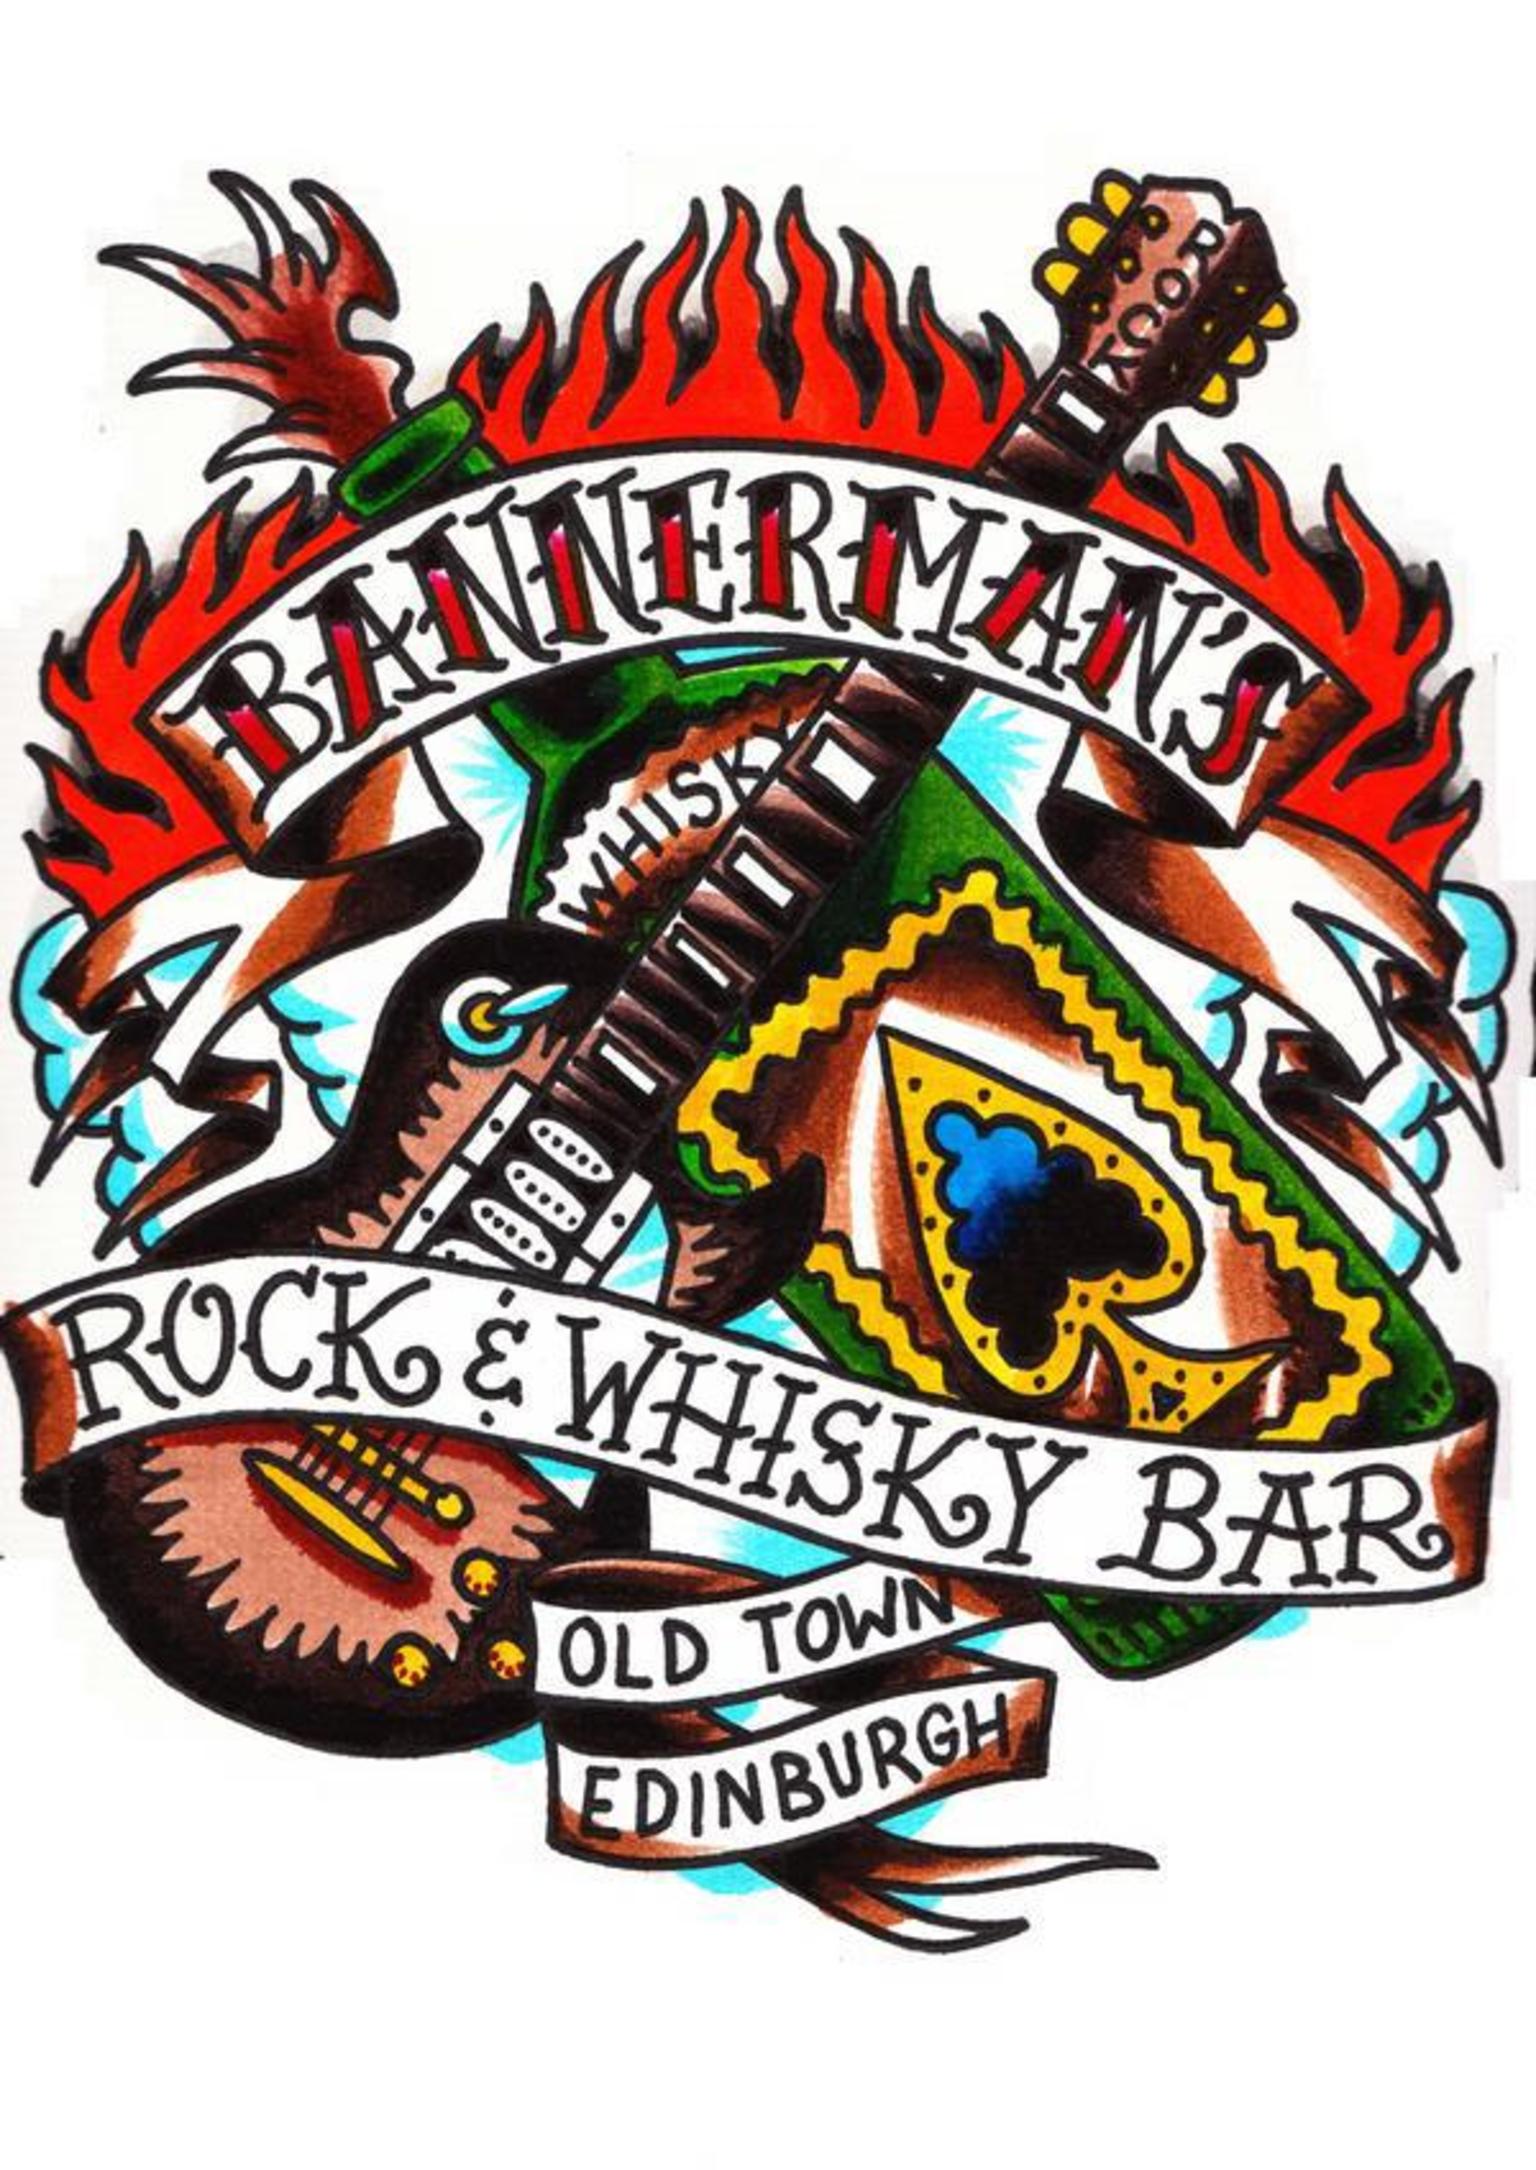 Bannerman's Bar